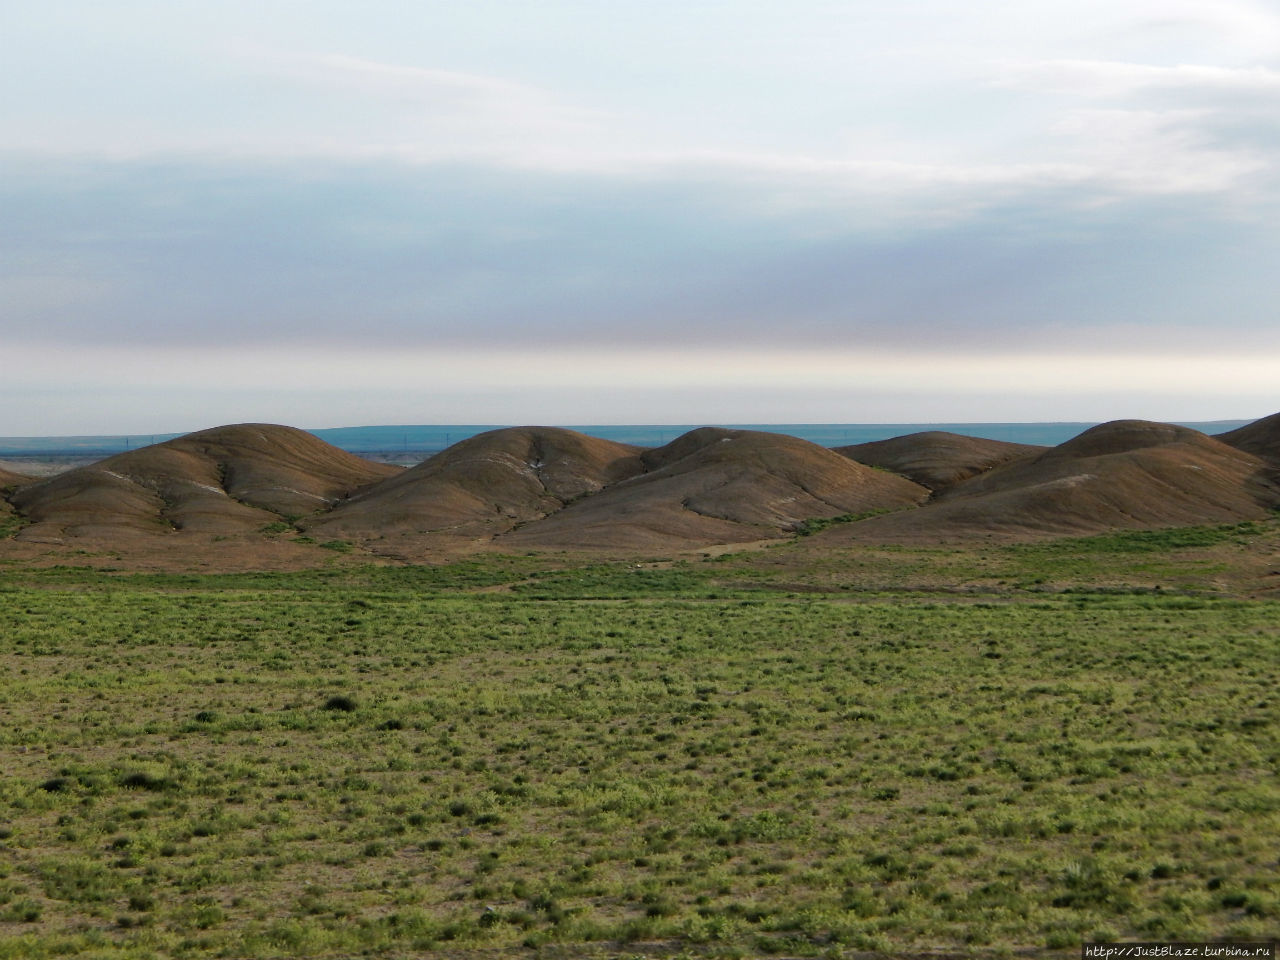 Мангистау: вернуться с другой планеты Мангистауская область, Казахстан